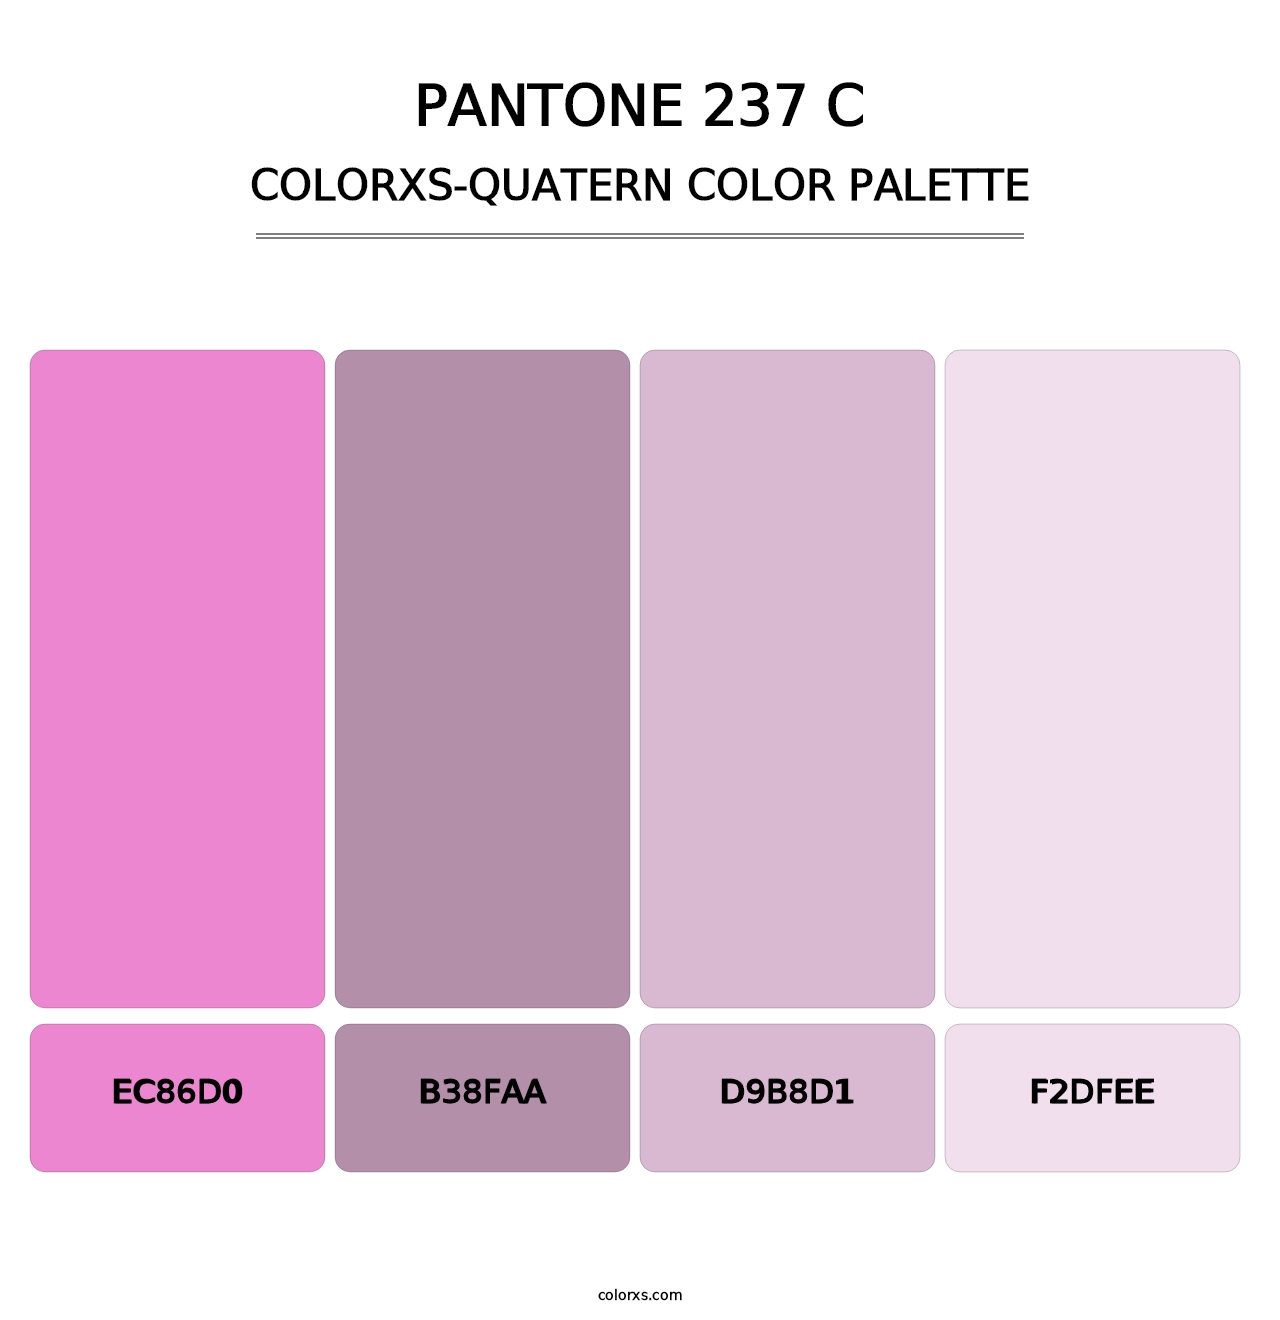 PANTONE 237 C - Colorxs Quatern Palette